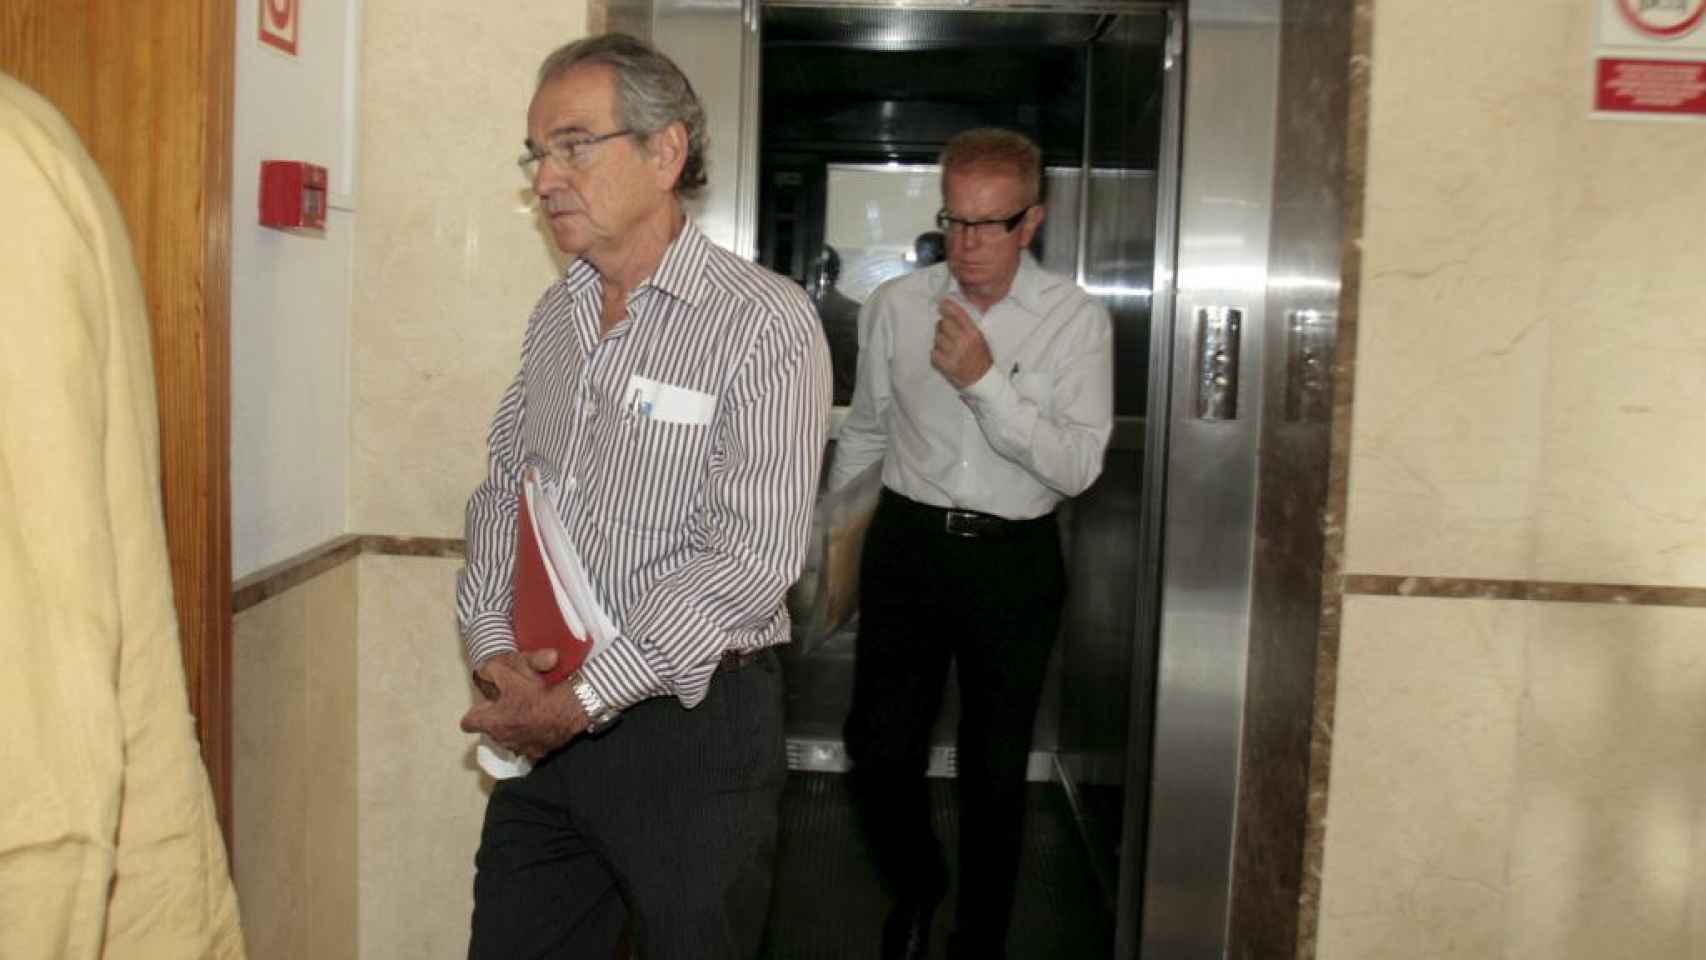 Los arquitectos Luis y Jaime García Ruiz a su entrada en el juzgado de Palma en una imagen de 2009 / EFE